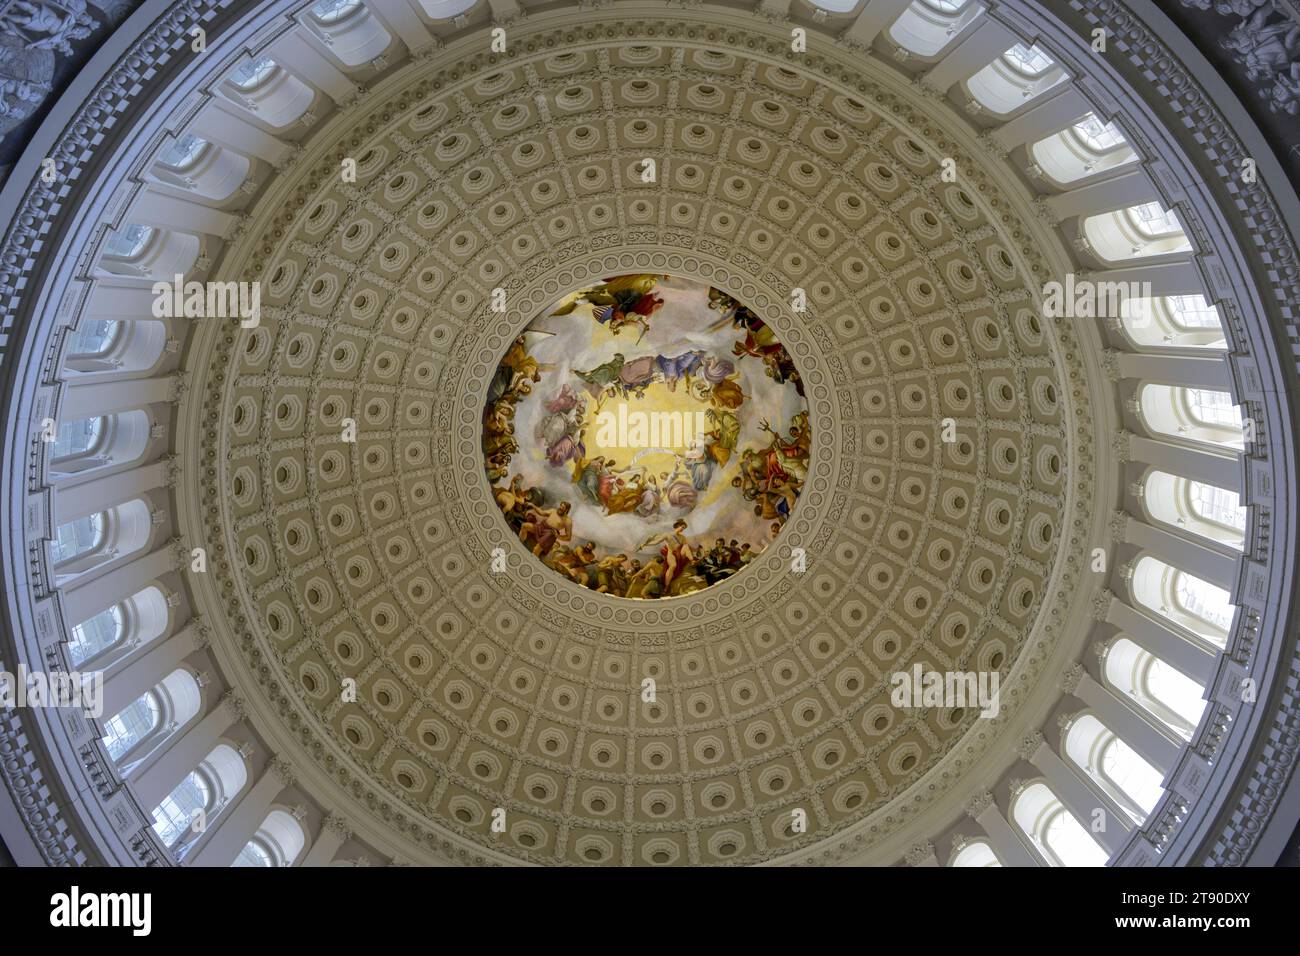 Die Capitol Rotunda Decke, ein großer gewölbter, kreisförmiger Raum im Zentrum des US Capitol. Stockfoto